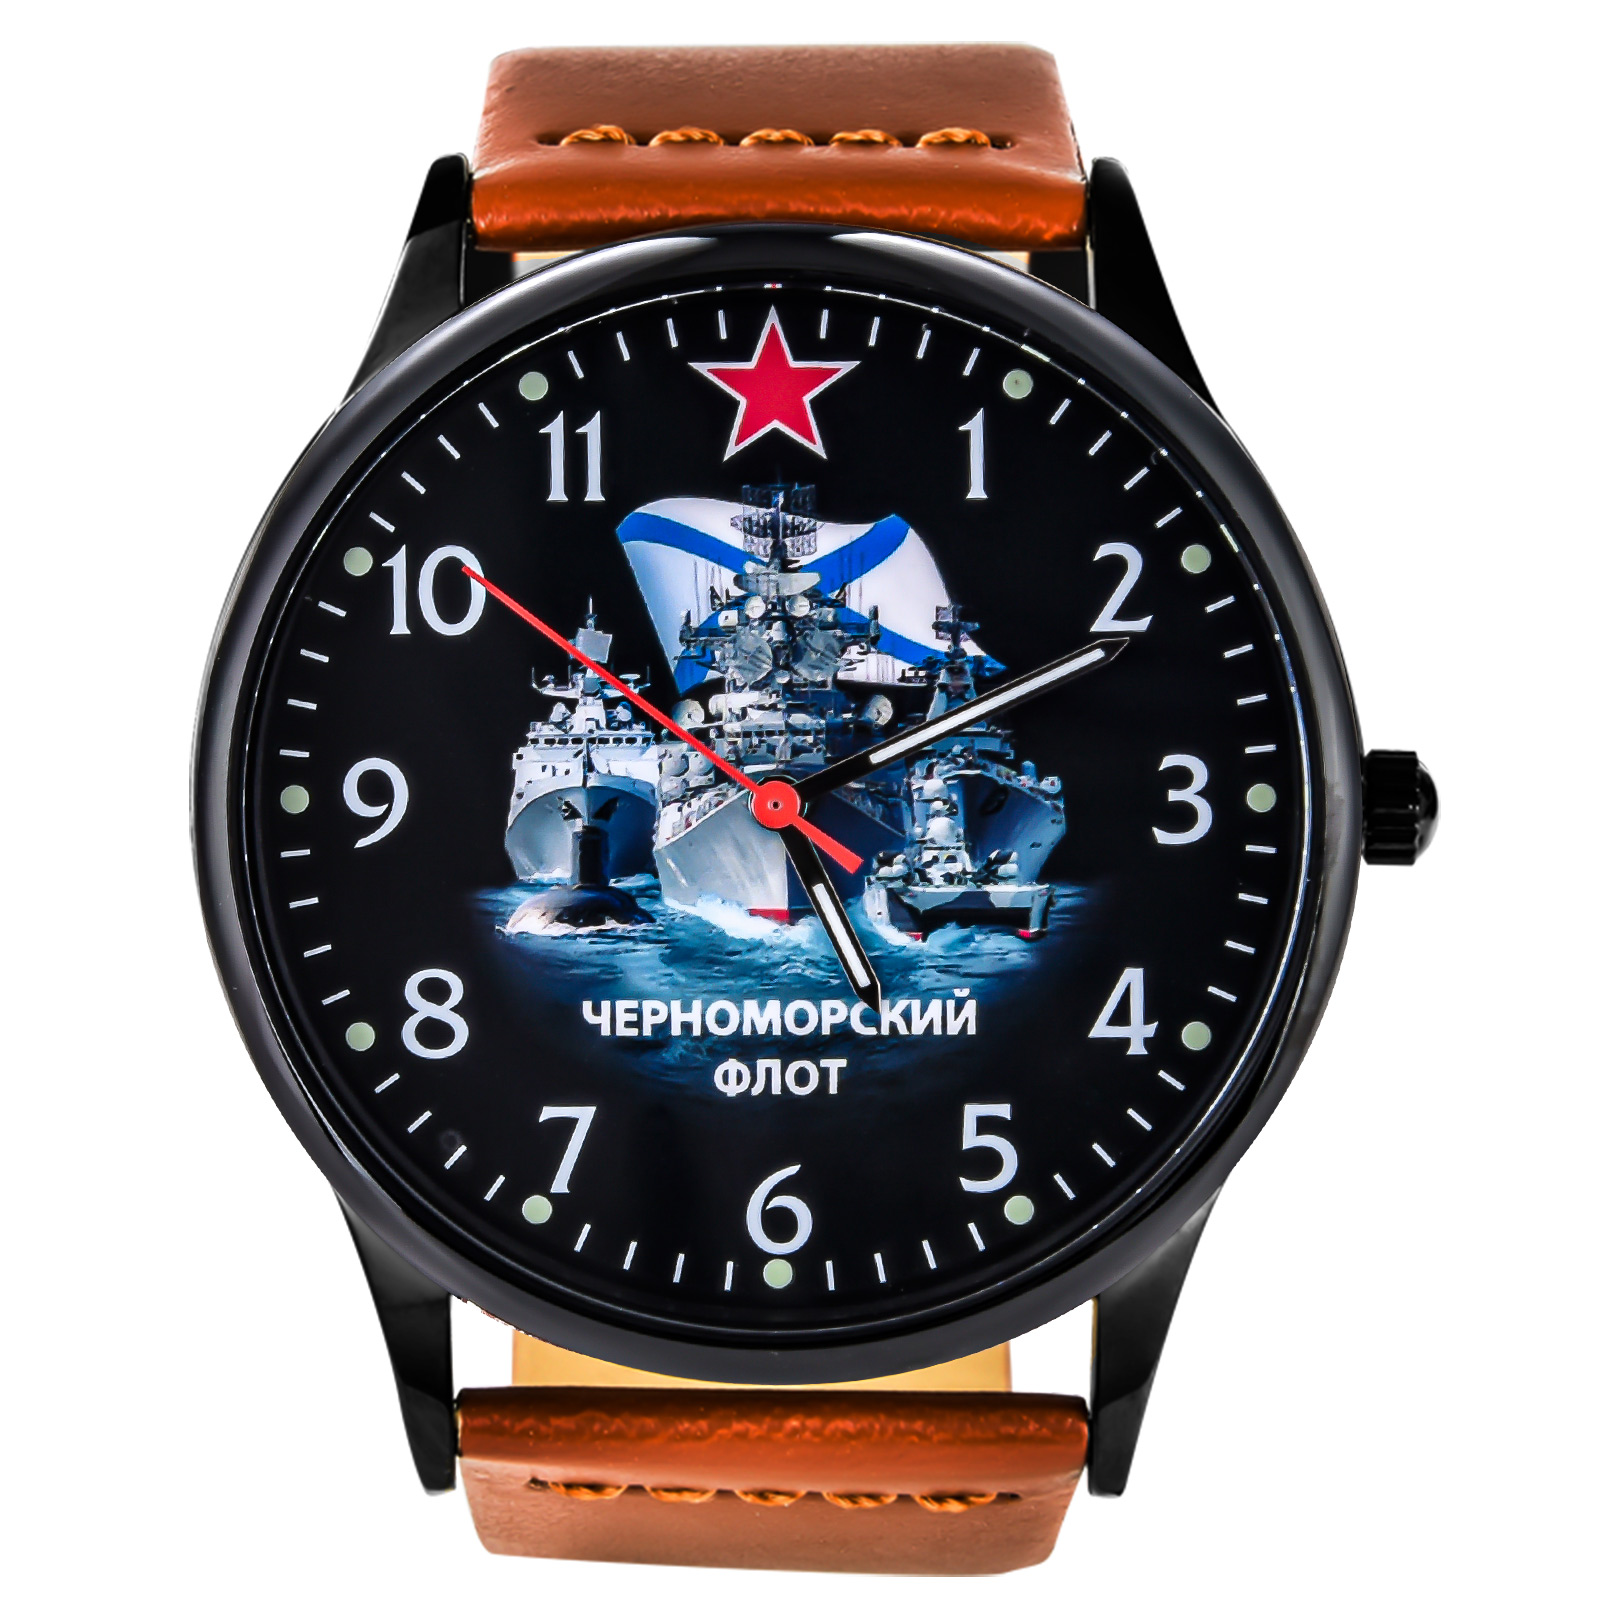 Подарочные командирские часы "Черноморский флот" 